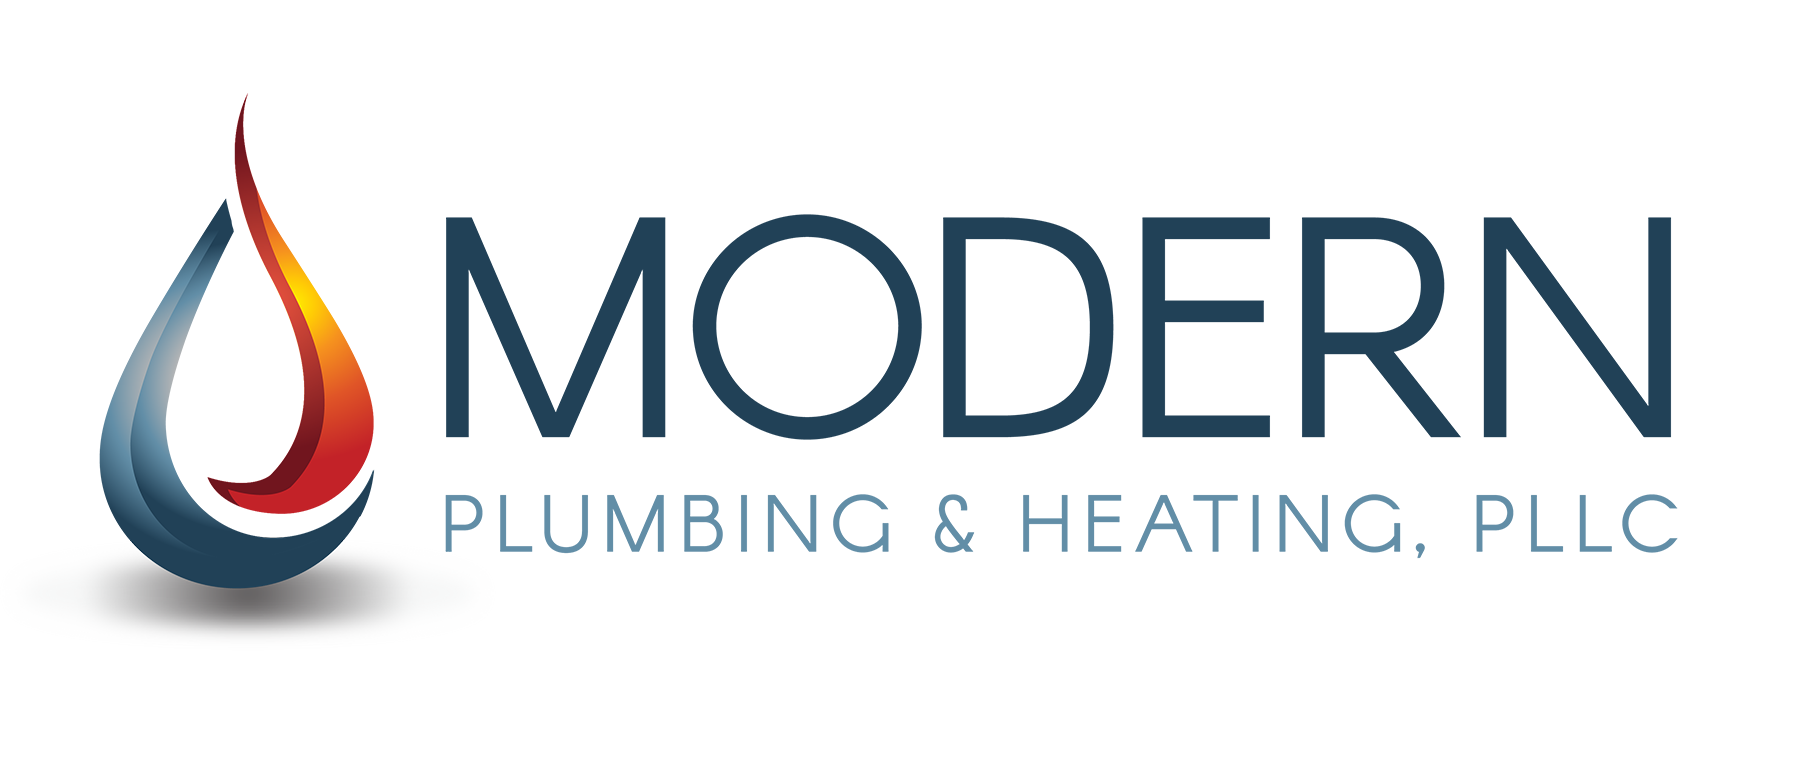 Modern Plumbing & Heating Logo